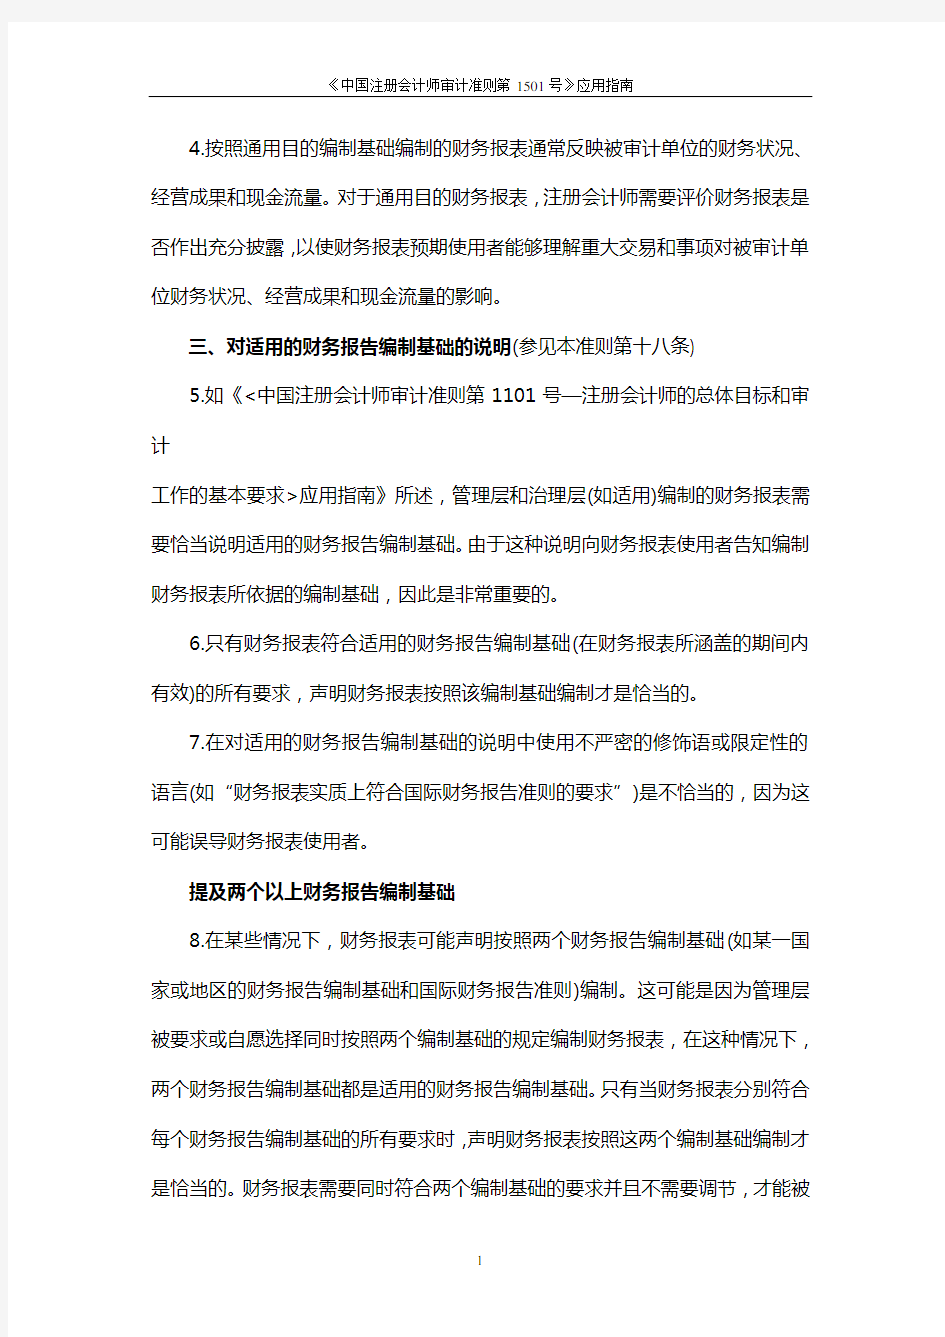 《中国注册会计师审计准则第1501号—对财务报表形成审计意见和出具审计报告.doc